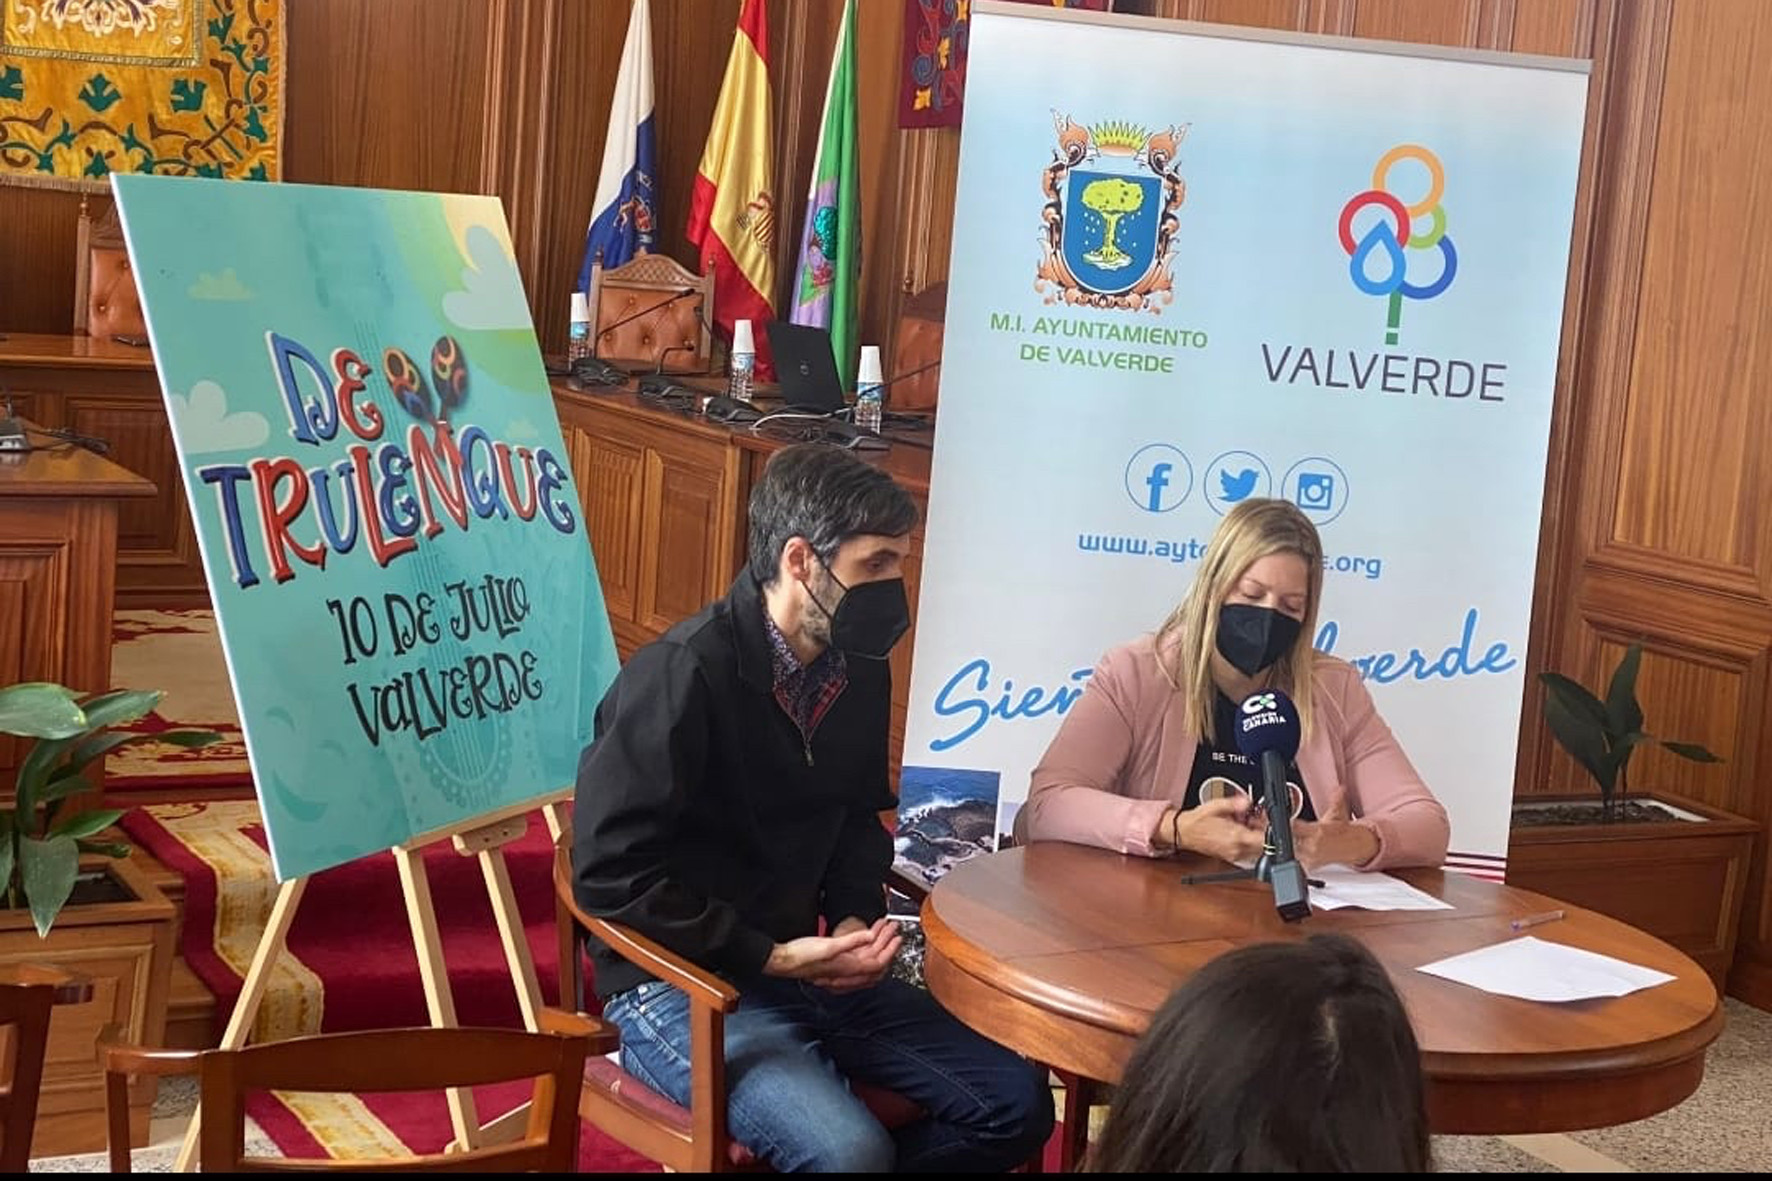 Valverde presenta el Festival “De Trulenque” que se celebrar mañana sábado en la capital herreña